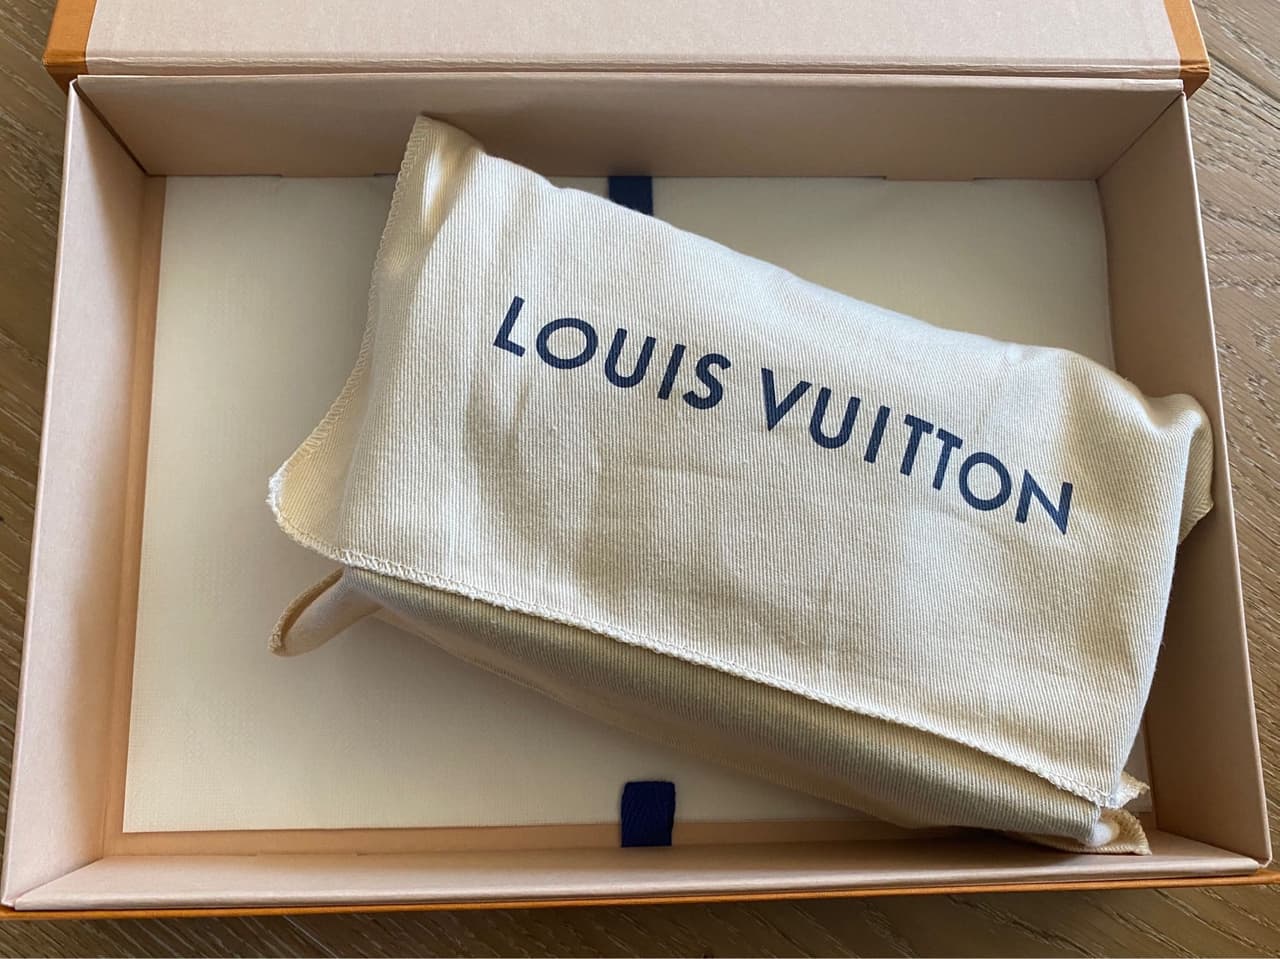 #開箱 Louis Vuitton Dauphine Woc 迷你達芙妮 - 精品板 | Dcard